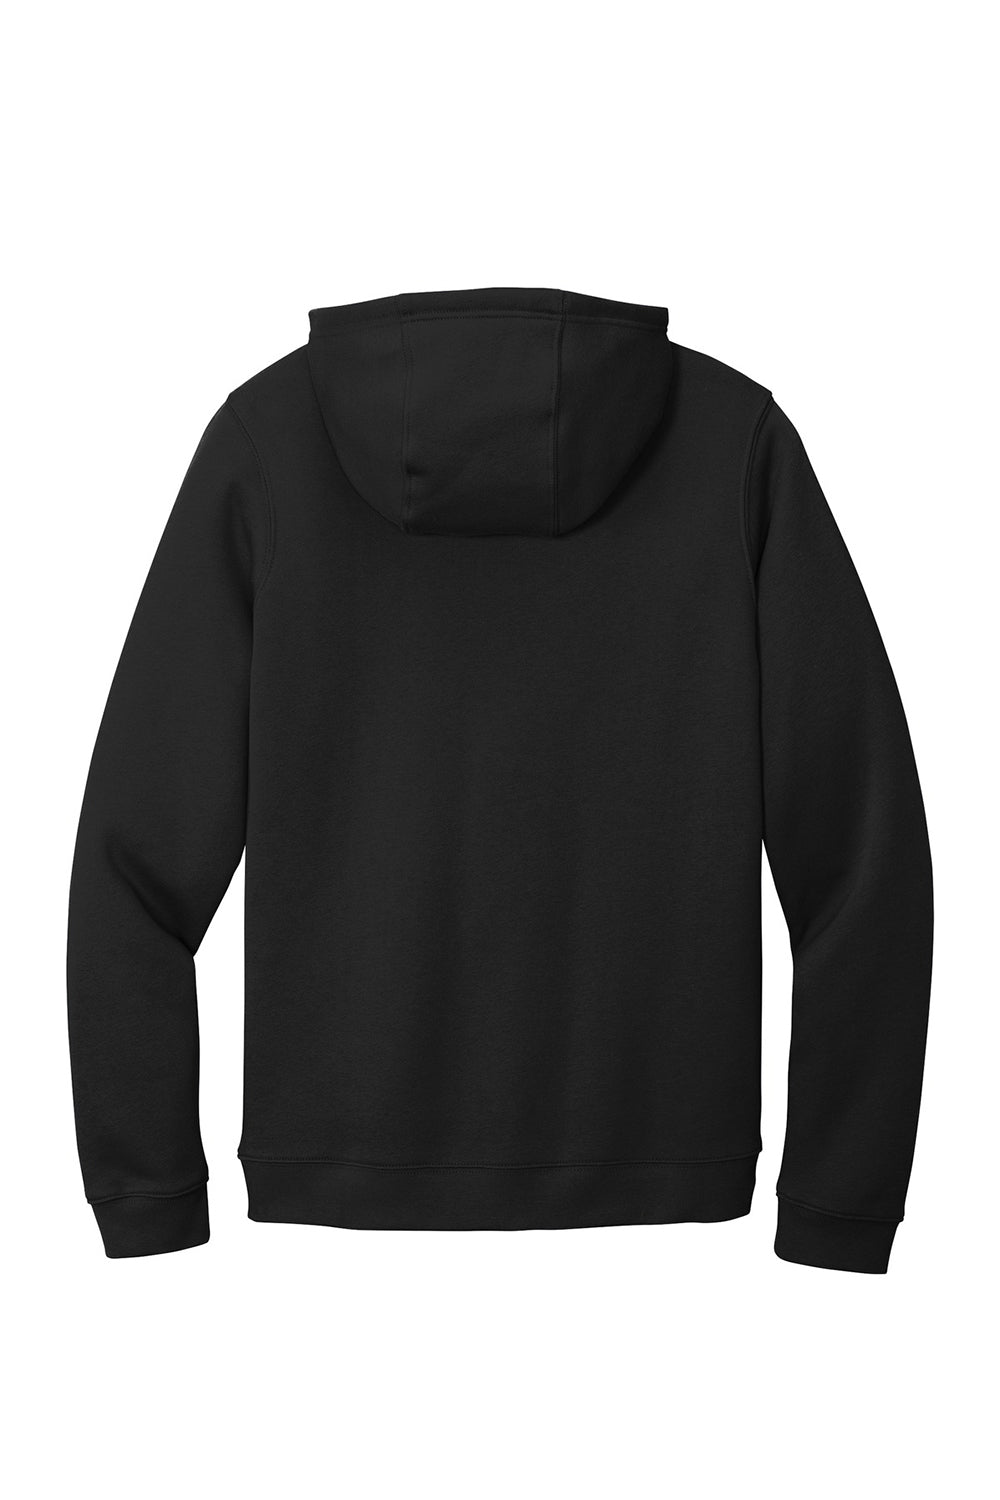 Nike CJ1611 Mens Club Fleece Hooded Sweatshirt Hoodie Black Flat Back